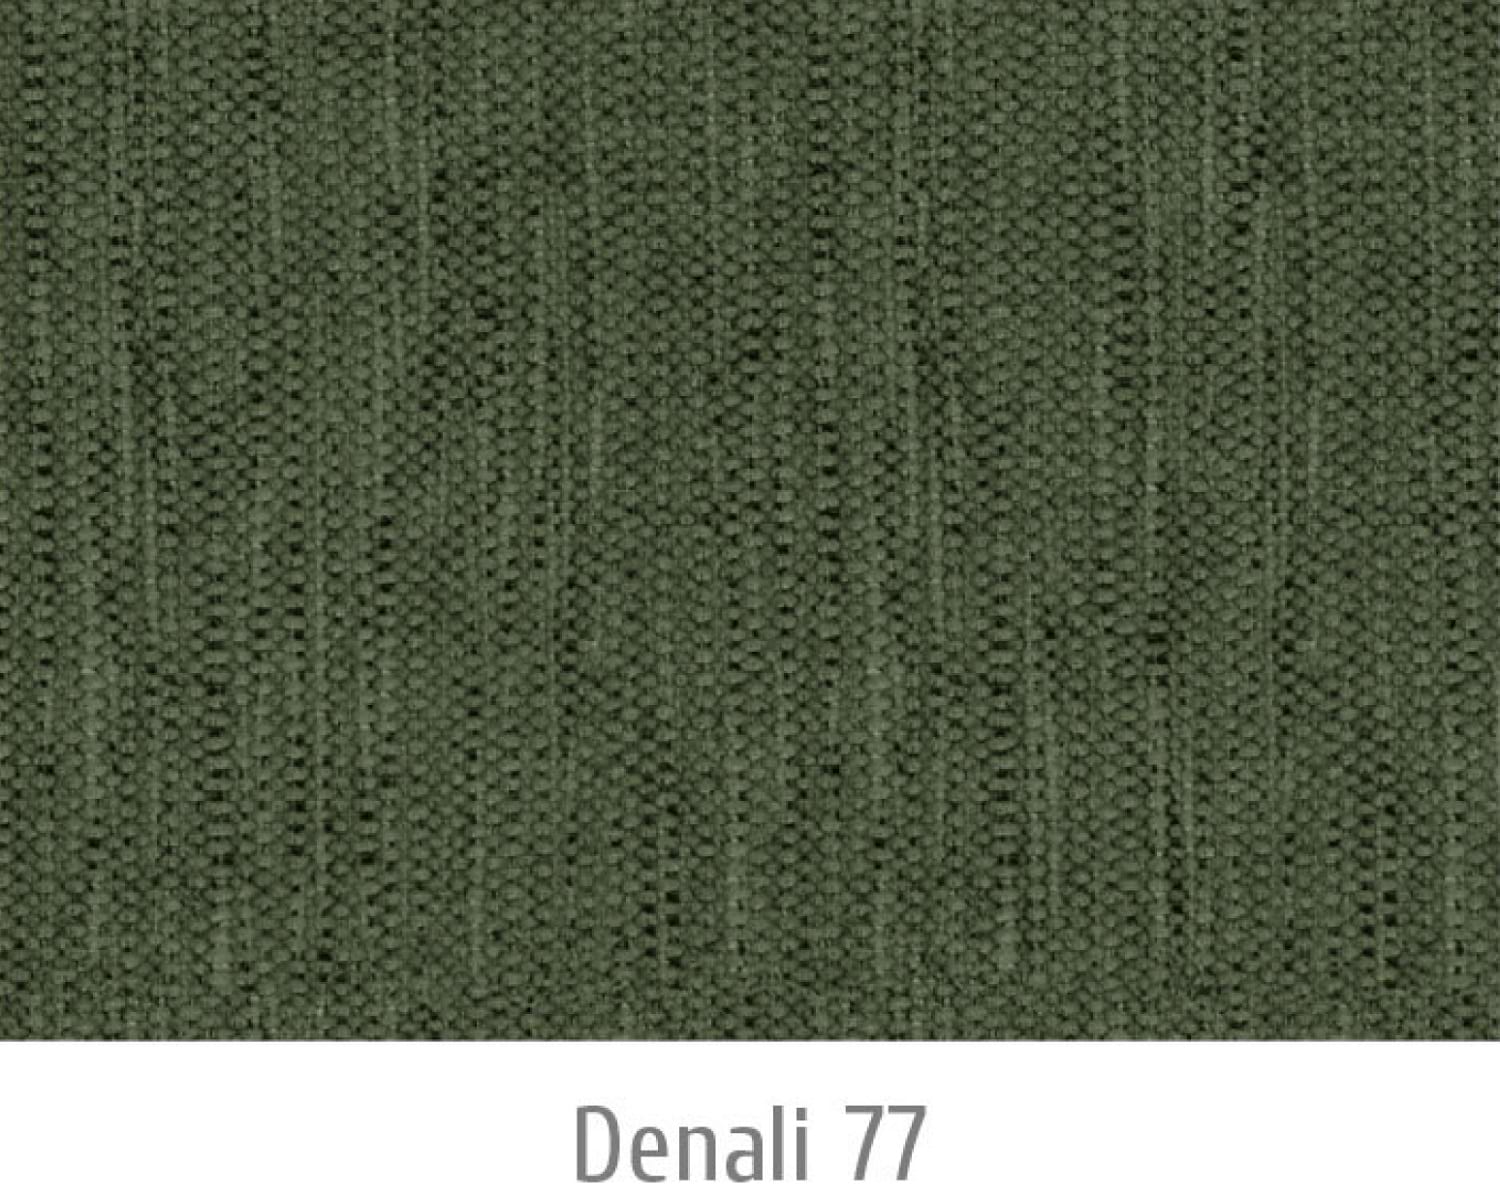 Denali77